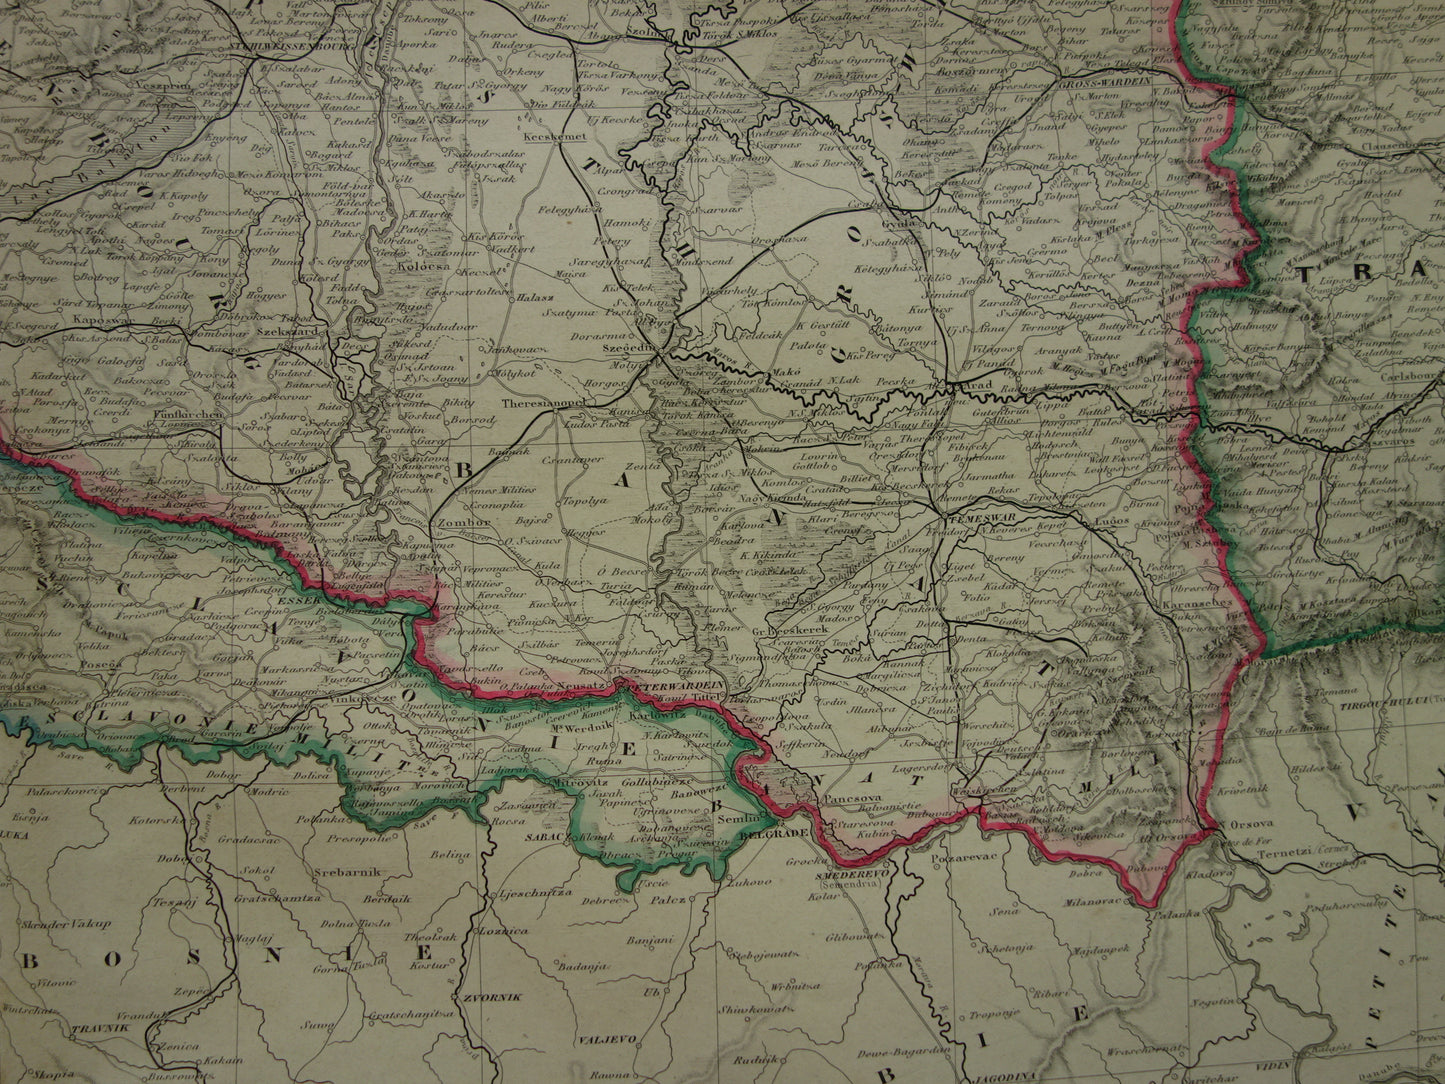 Oude kaart van Oostenrijk-Hongarije Zeer grote originele antieke handgekleurde landkaart Tsjechië Kroatië Slovenië vintage kaarten